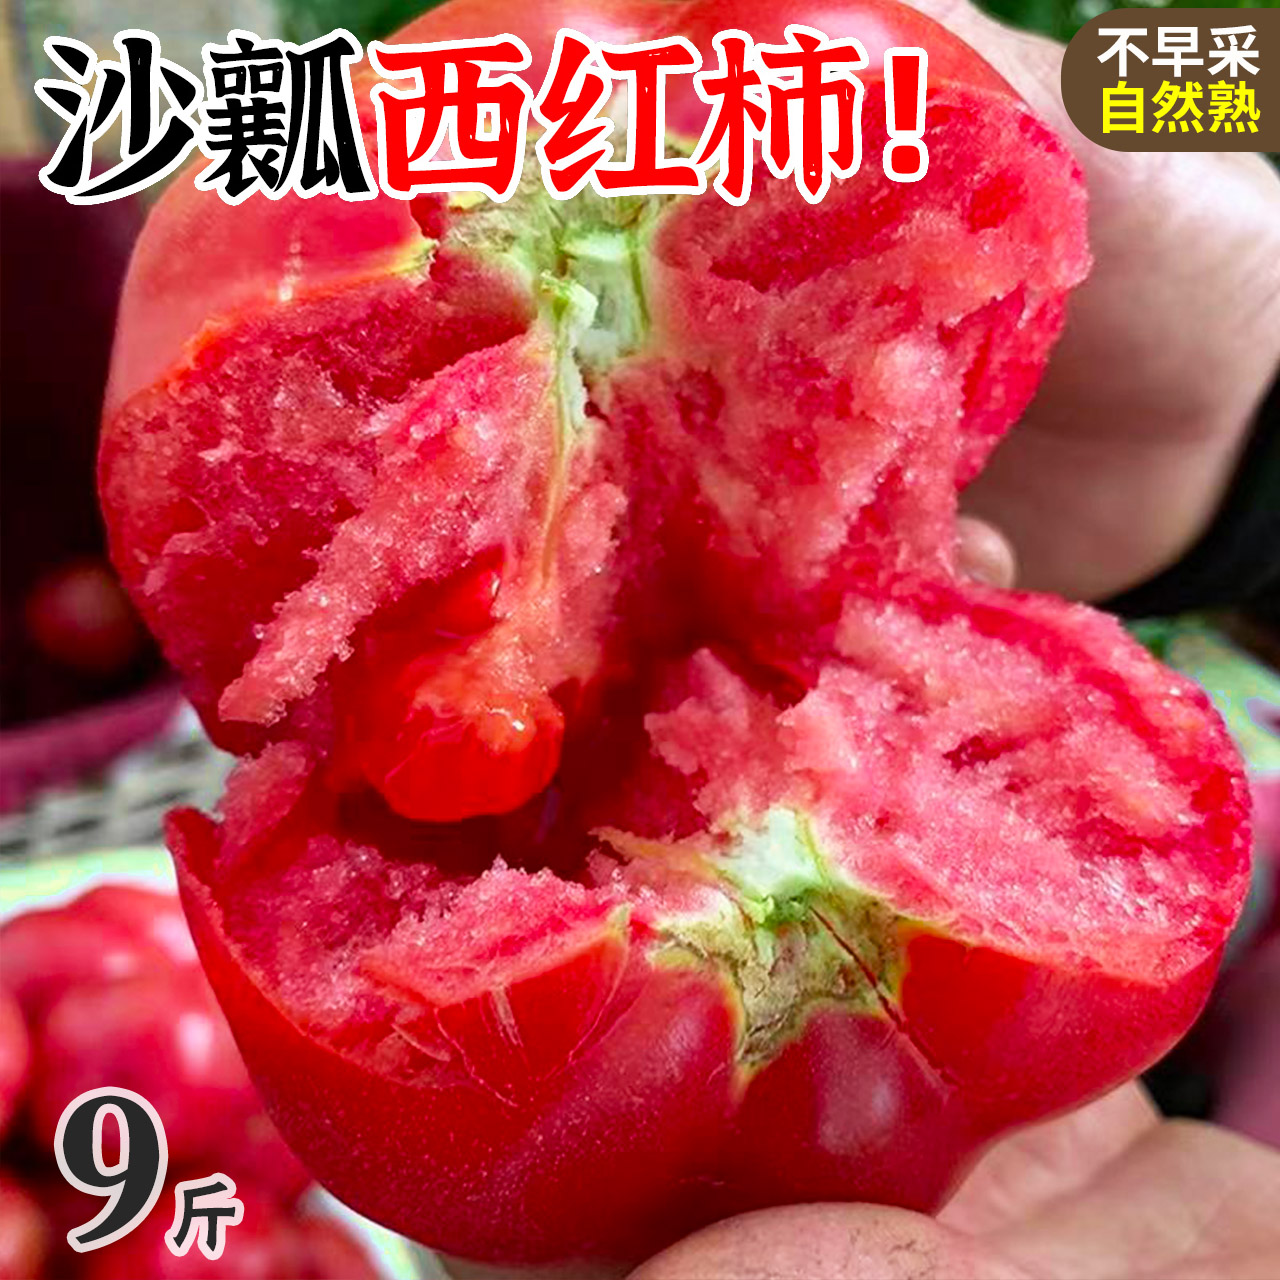 西红柿新鲜普罗旺斯当季水果番茄自然熟沙瓤蕃茄10斤大生吃的蔬菜